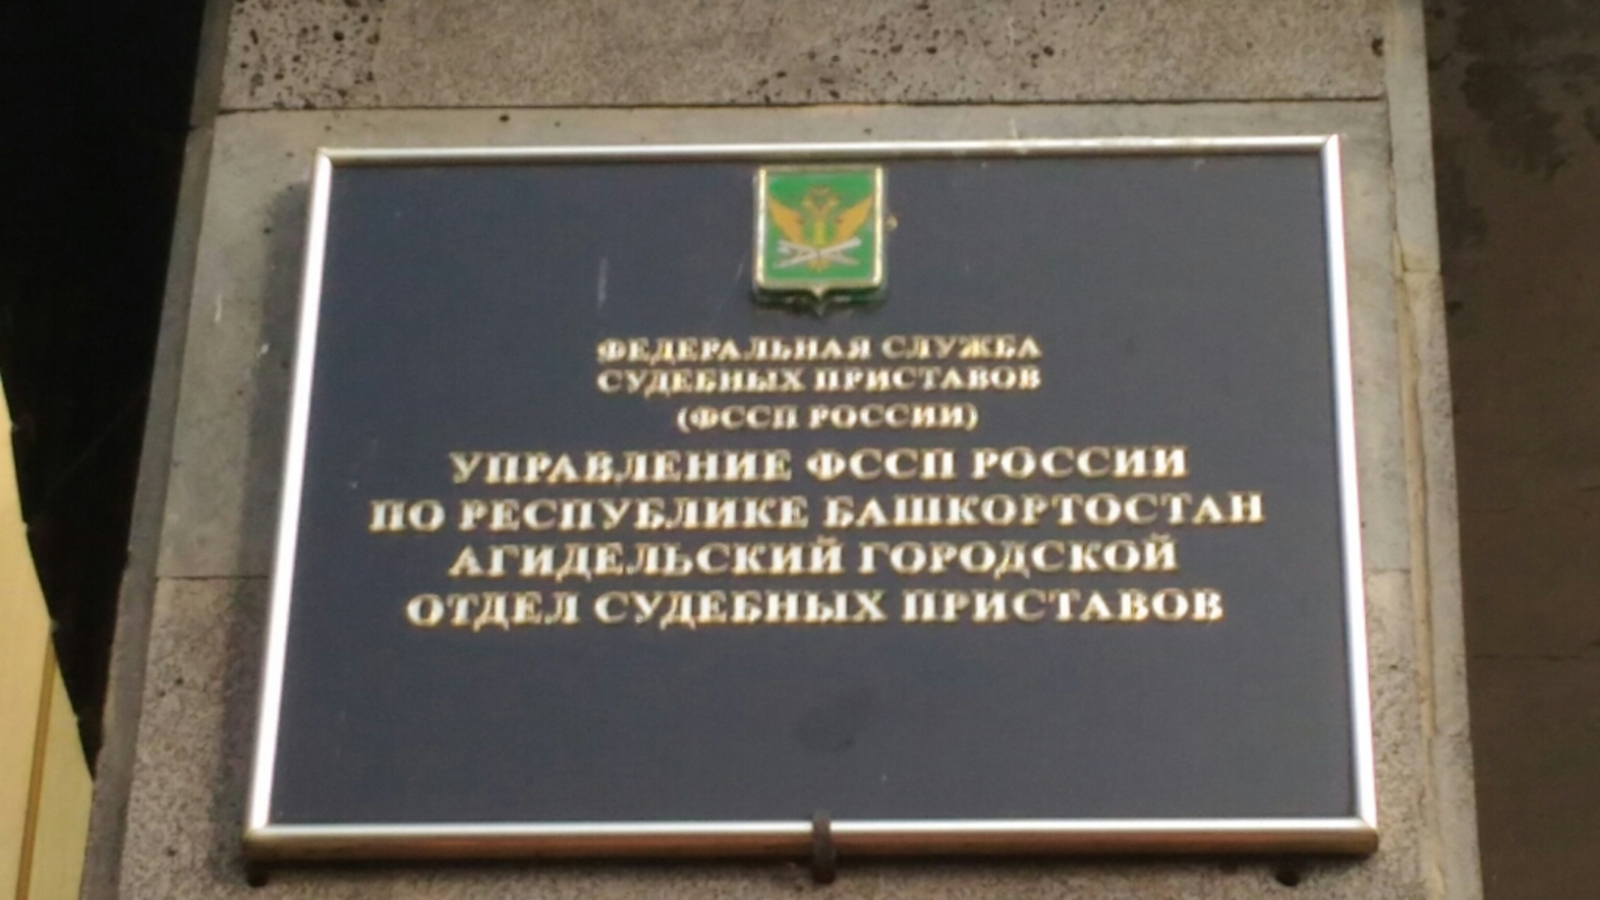 Судебные приставы разыскали алиментообязанного из Башкирии в Москве